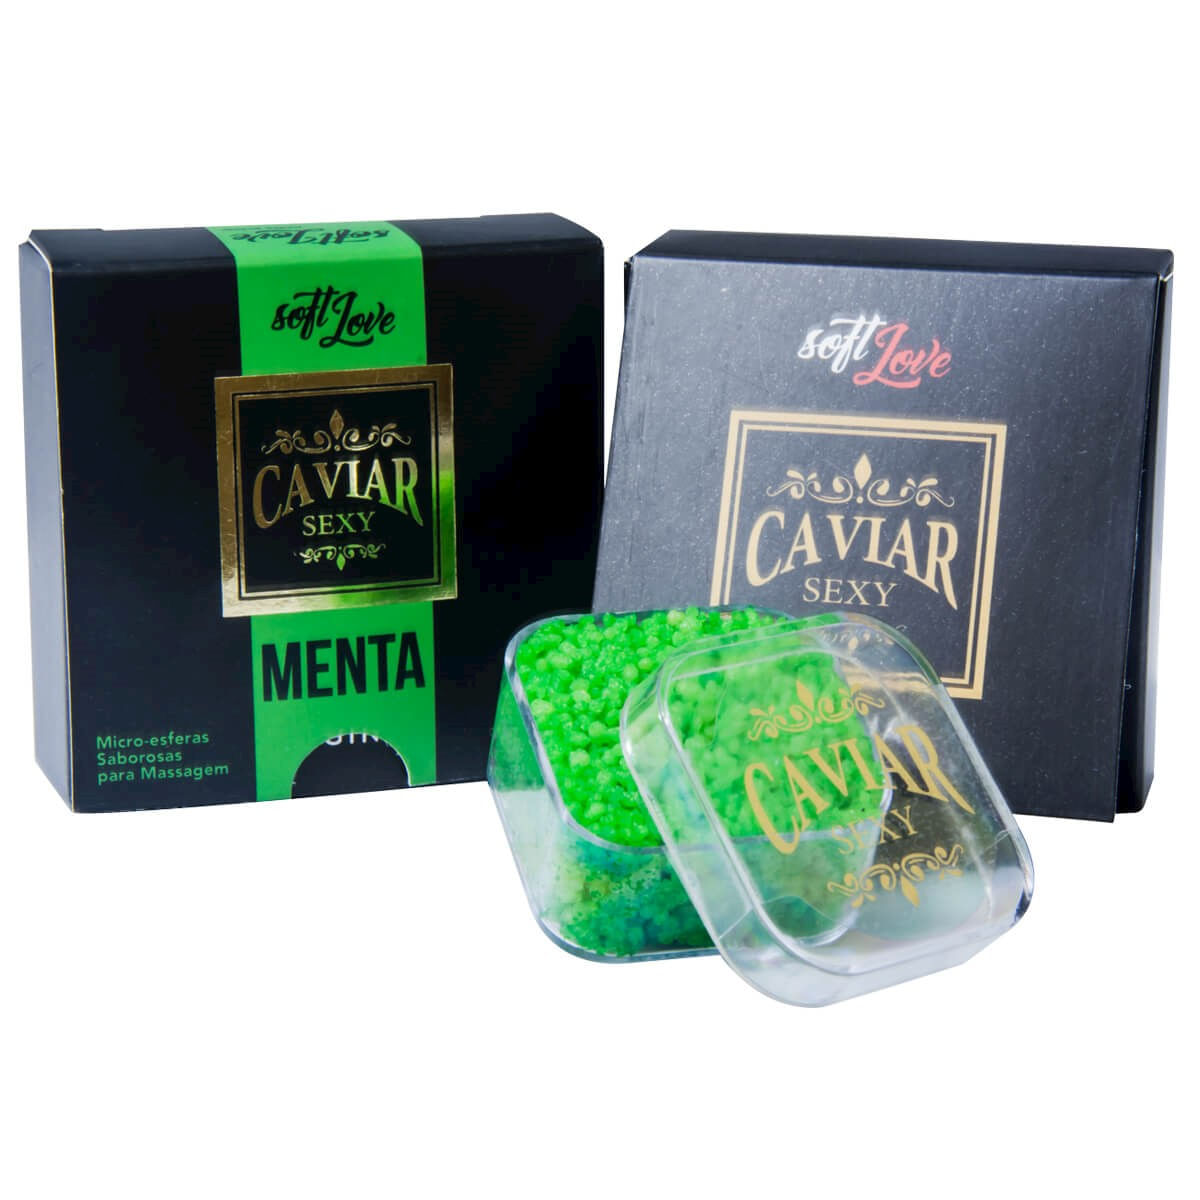 Caviar Sexy Menta Micro Esferas Saborosas para Massagem 14g Soft Love